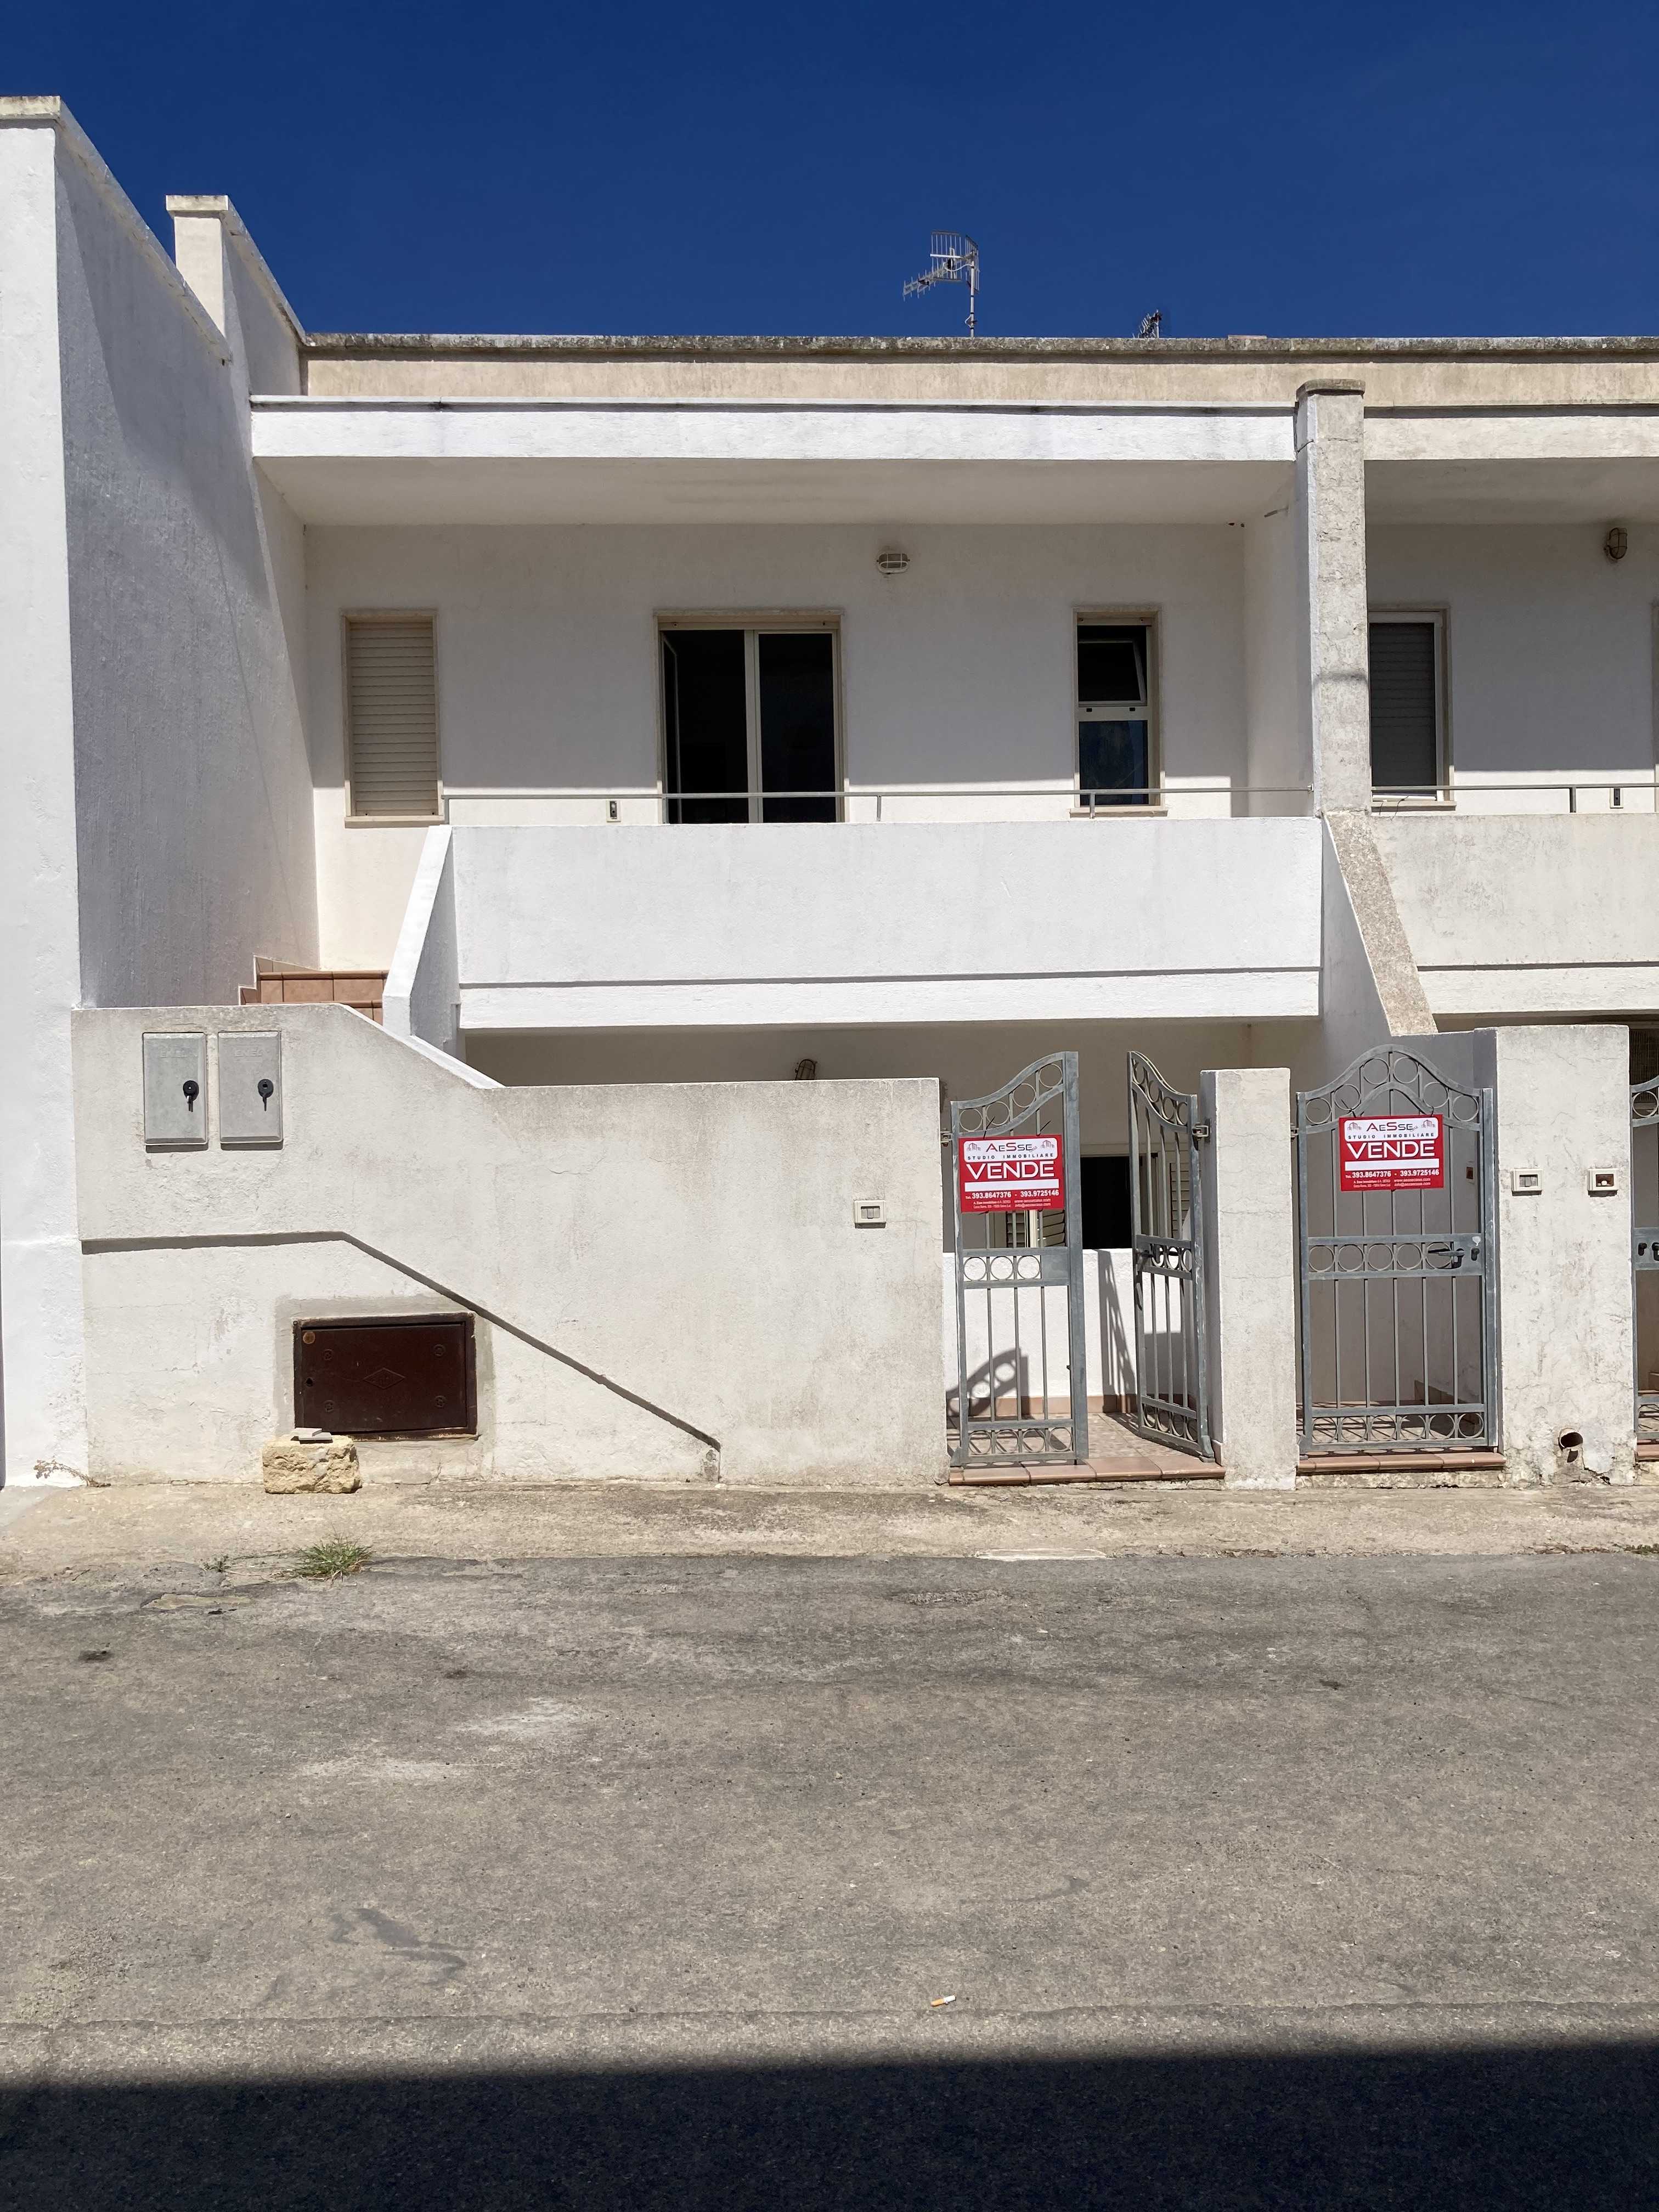 Vendite immobiliari Salento - appartamento Castrignano del Capo V222